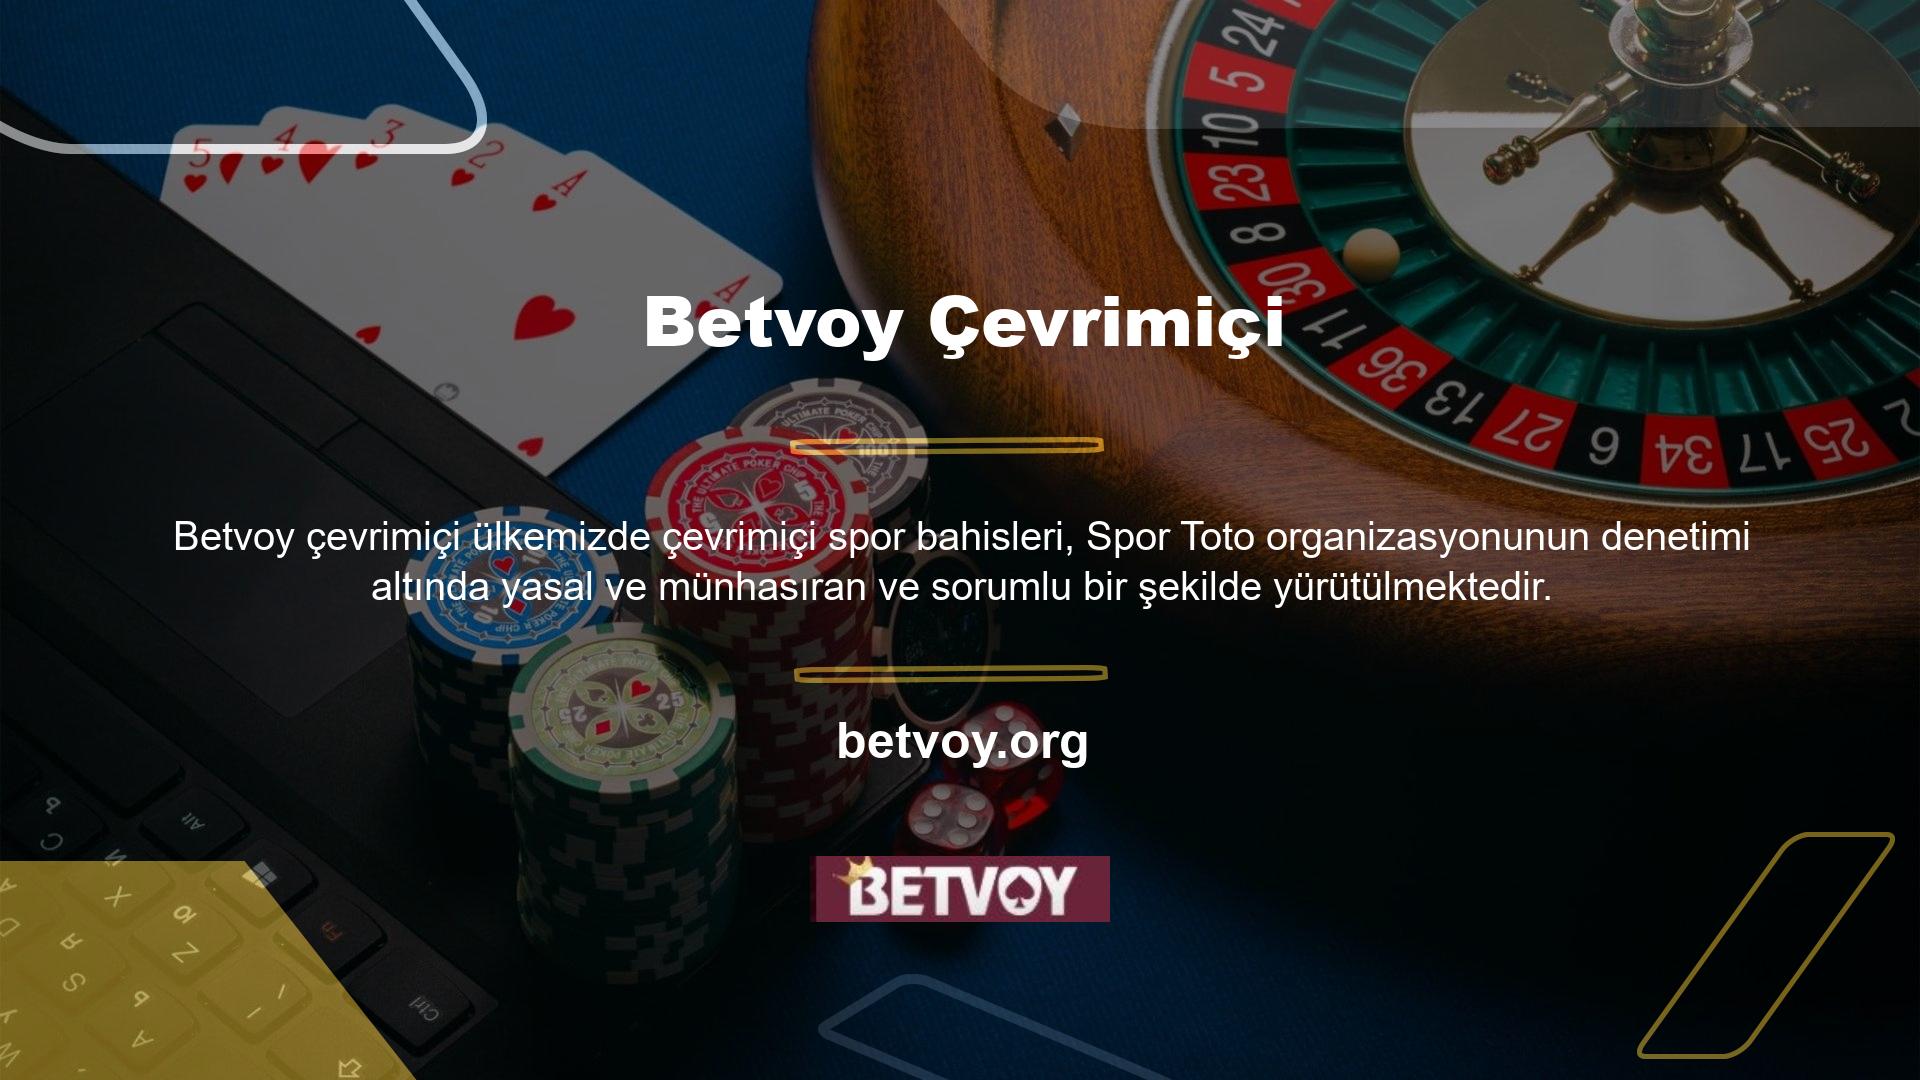 Türk kullanıcıların yoğun ilgisi üzerine yabancı spor bahisleri ve online casino oyunları, internet ortamının iletişim avantajlarını kullanarak Türk bahisçilere yasa dışı hizmetler sunmaya başlıyor